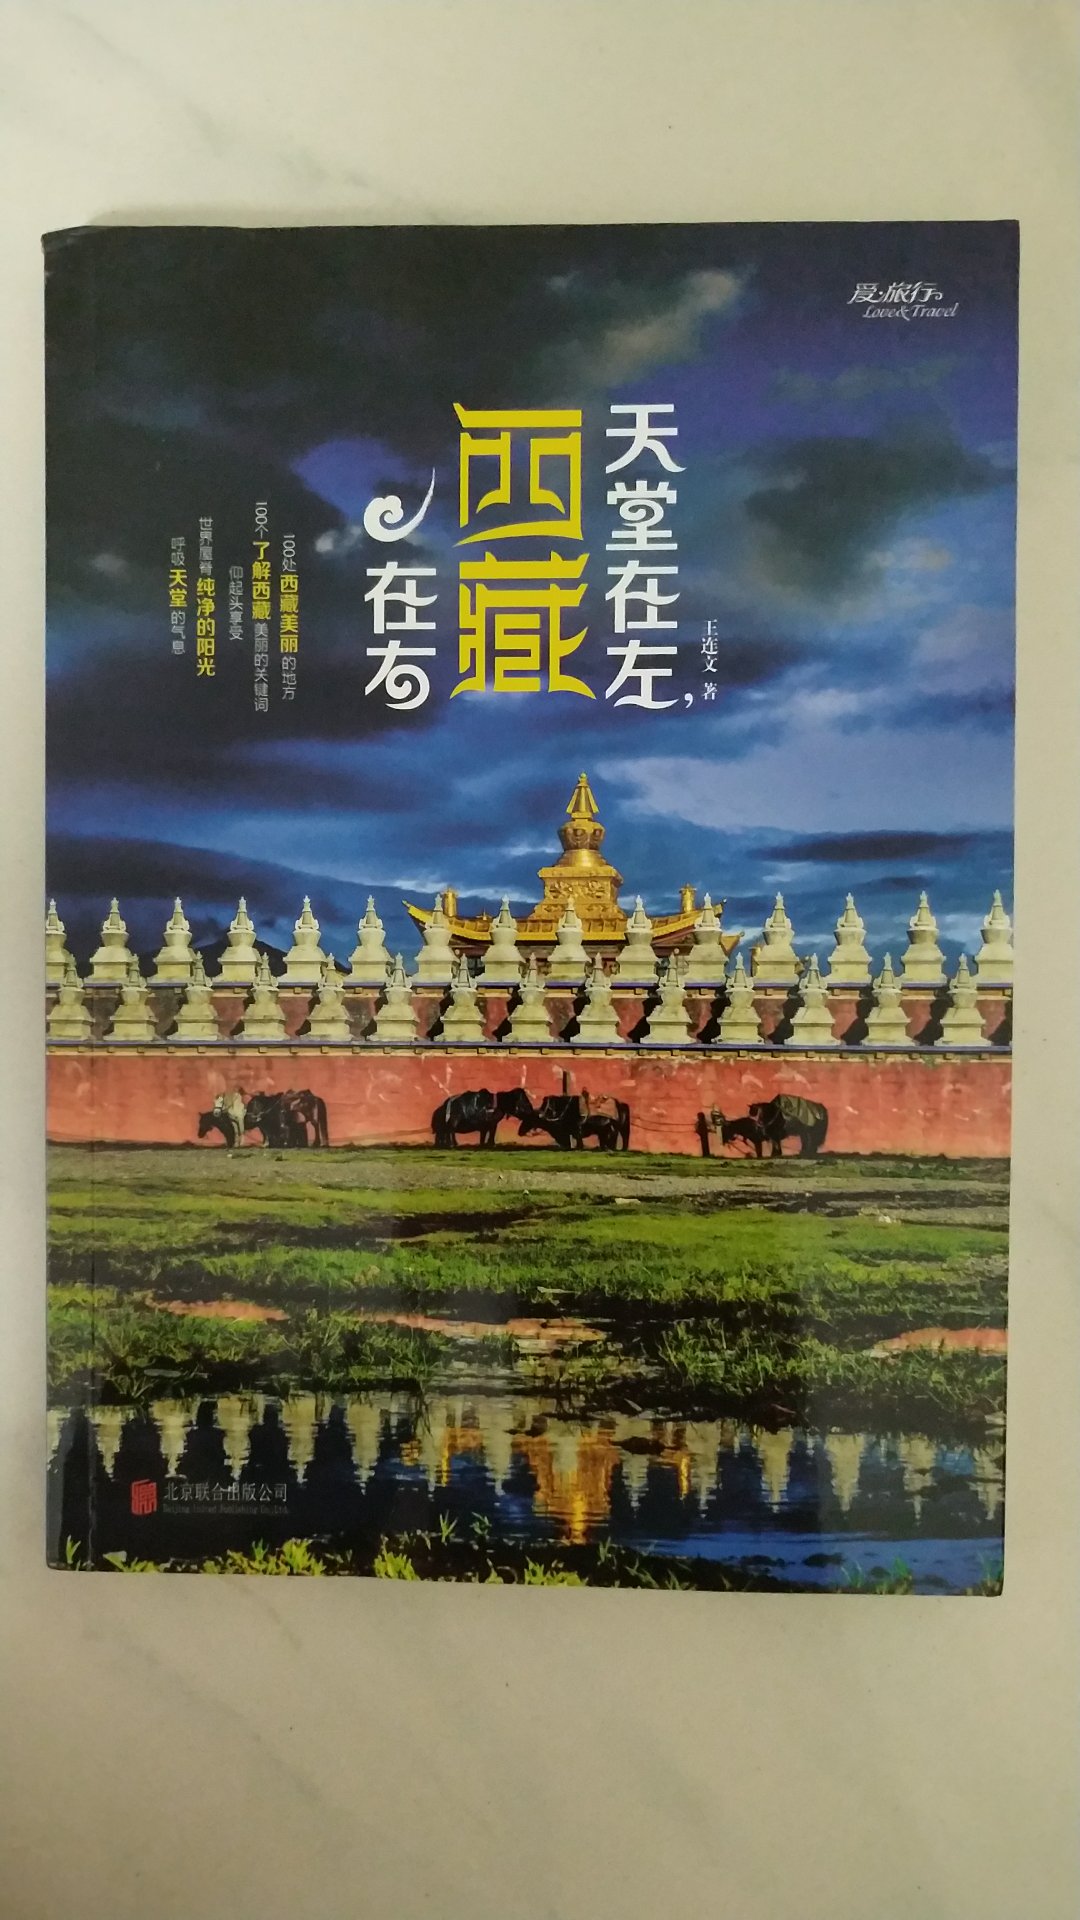 自营的书，了解西藏从这本书开始的！价格还算合适吧，活动也就买了！